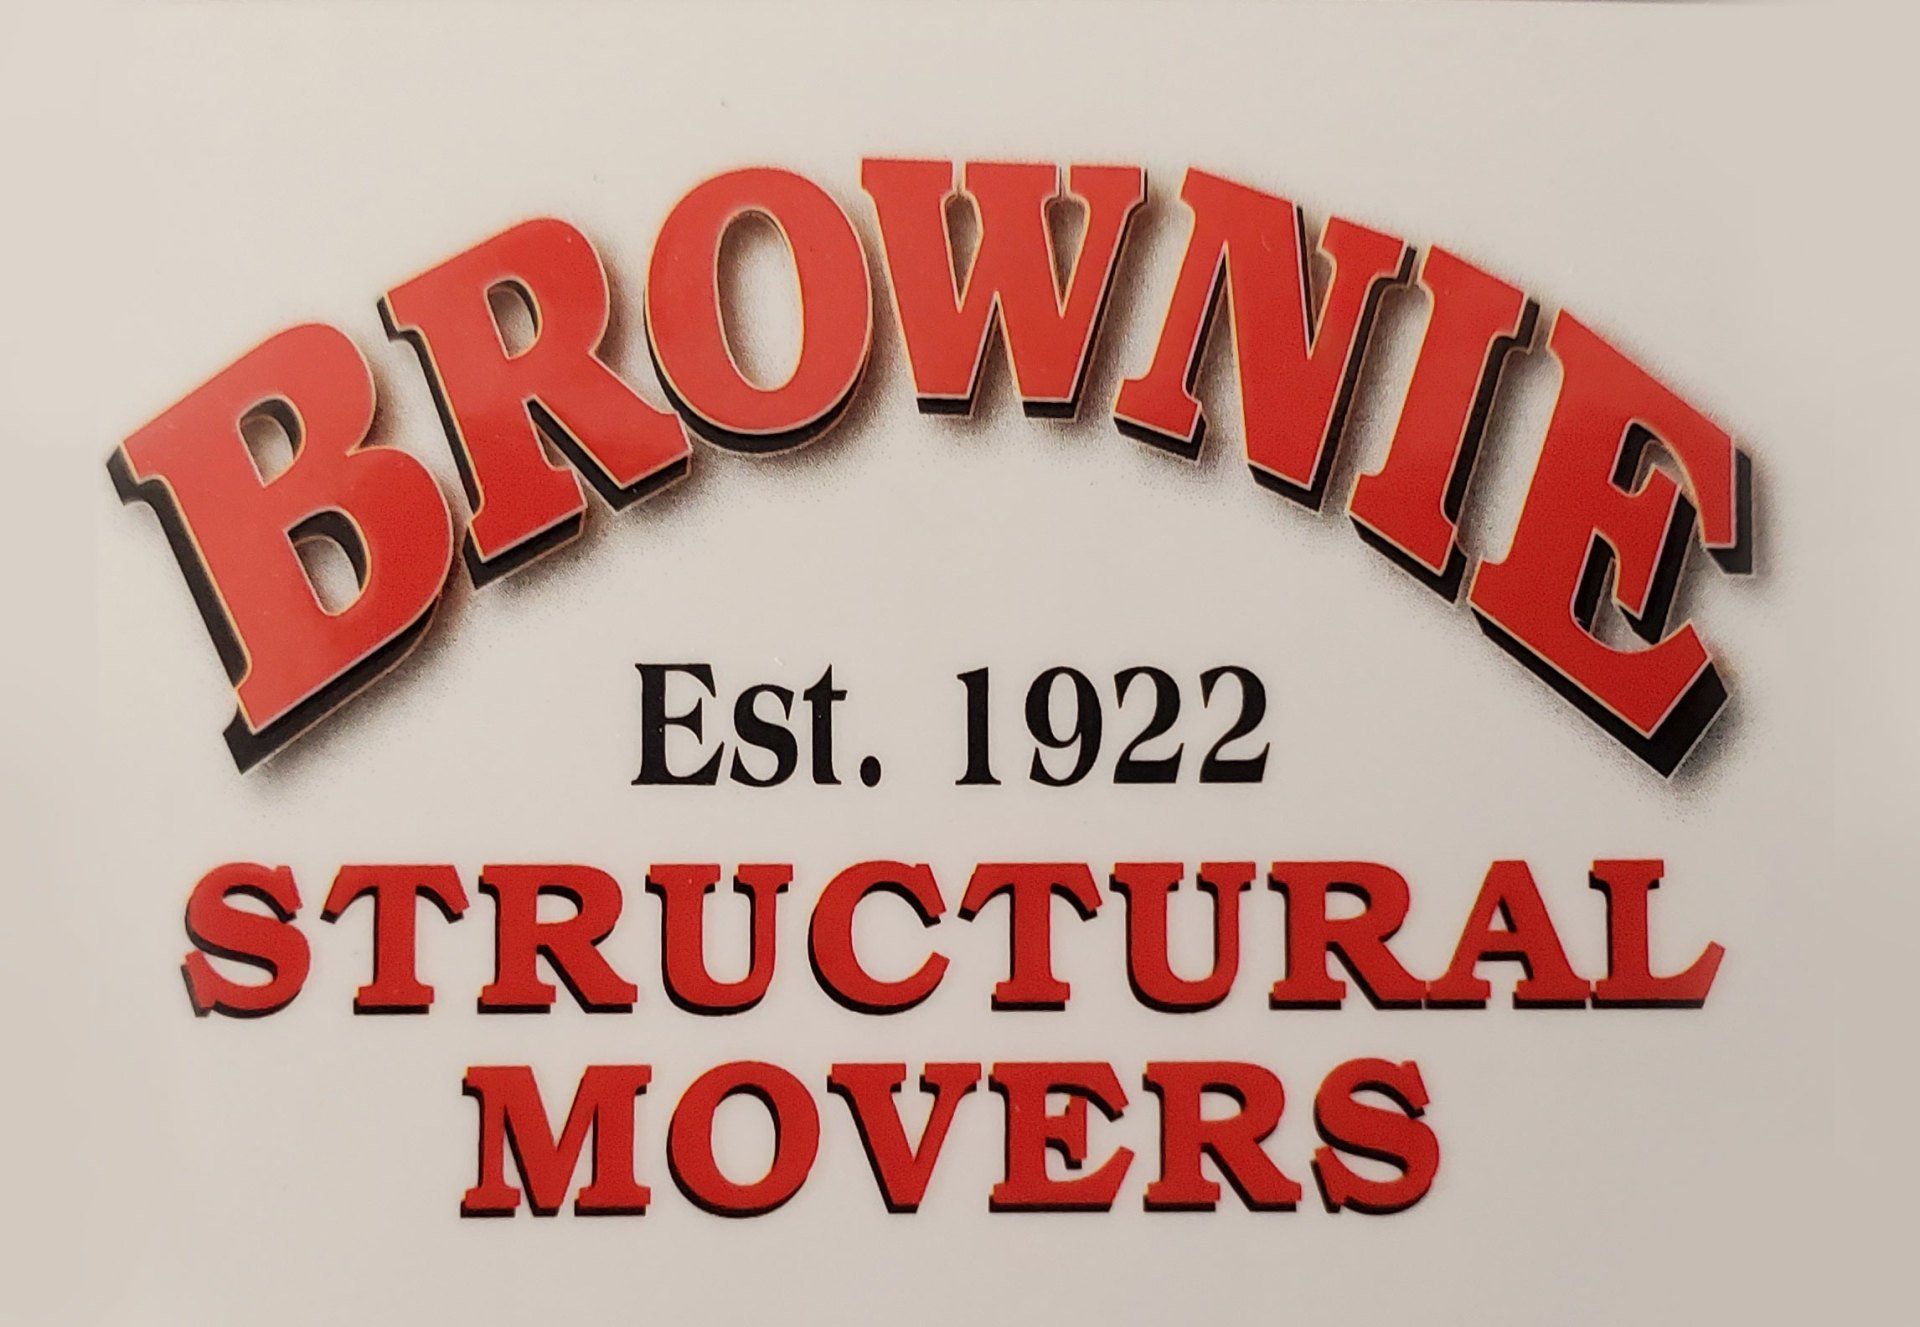 Brownie Companies - Logo